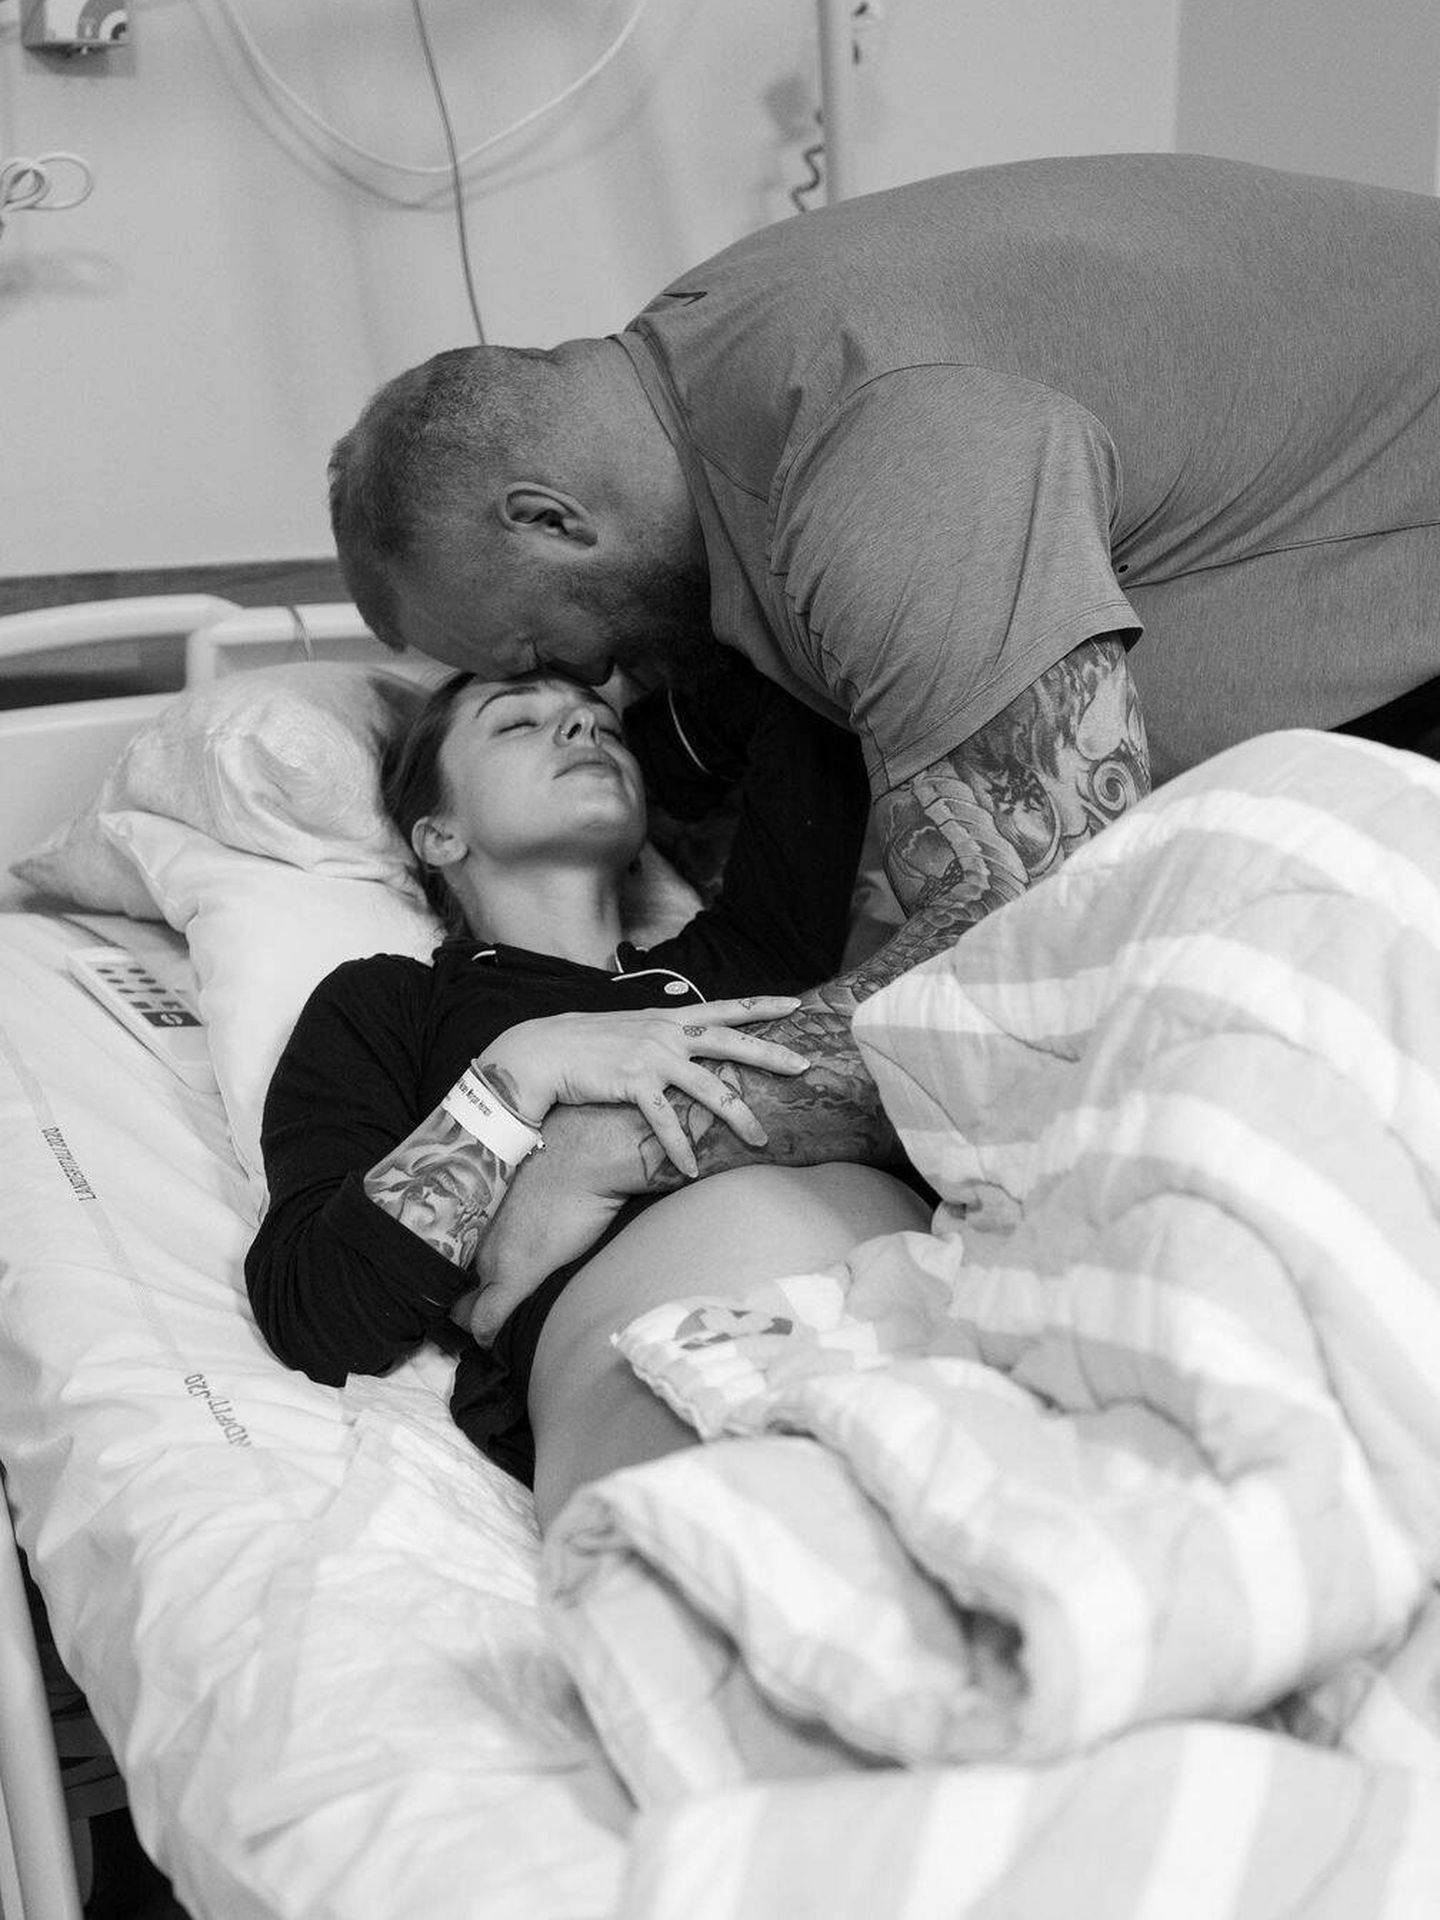 Imagen que publicó en sus redes la pareja al dar la noticia de la muerte de su hija. (Instagram/@thorbjornsson)